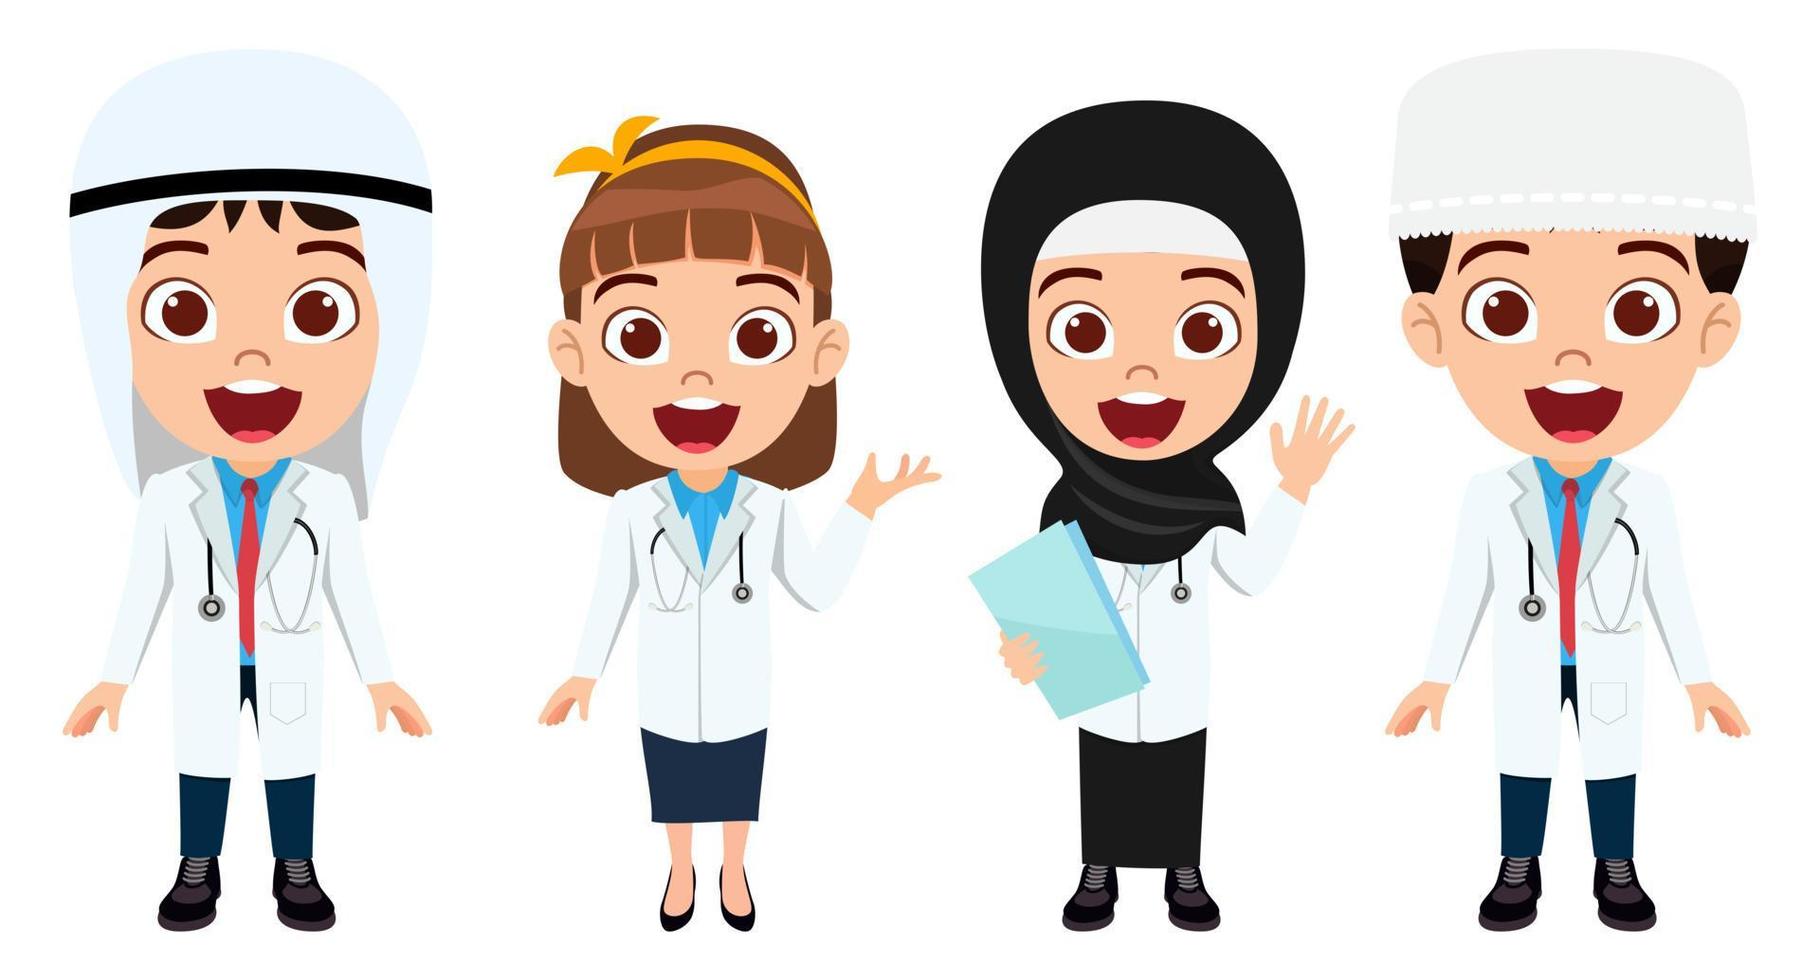 Feliz niño lindo niño y niña médico enfermera personaje vistiendo traje de médico y enfermera árabe musulmán de pie con expresión alegre aislado vector